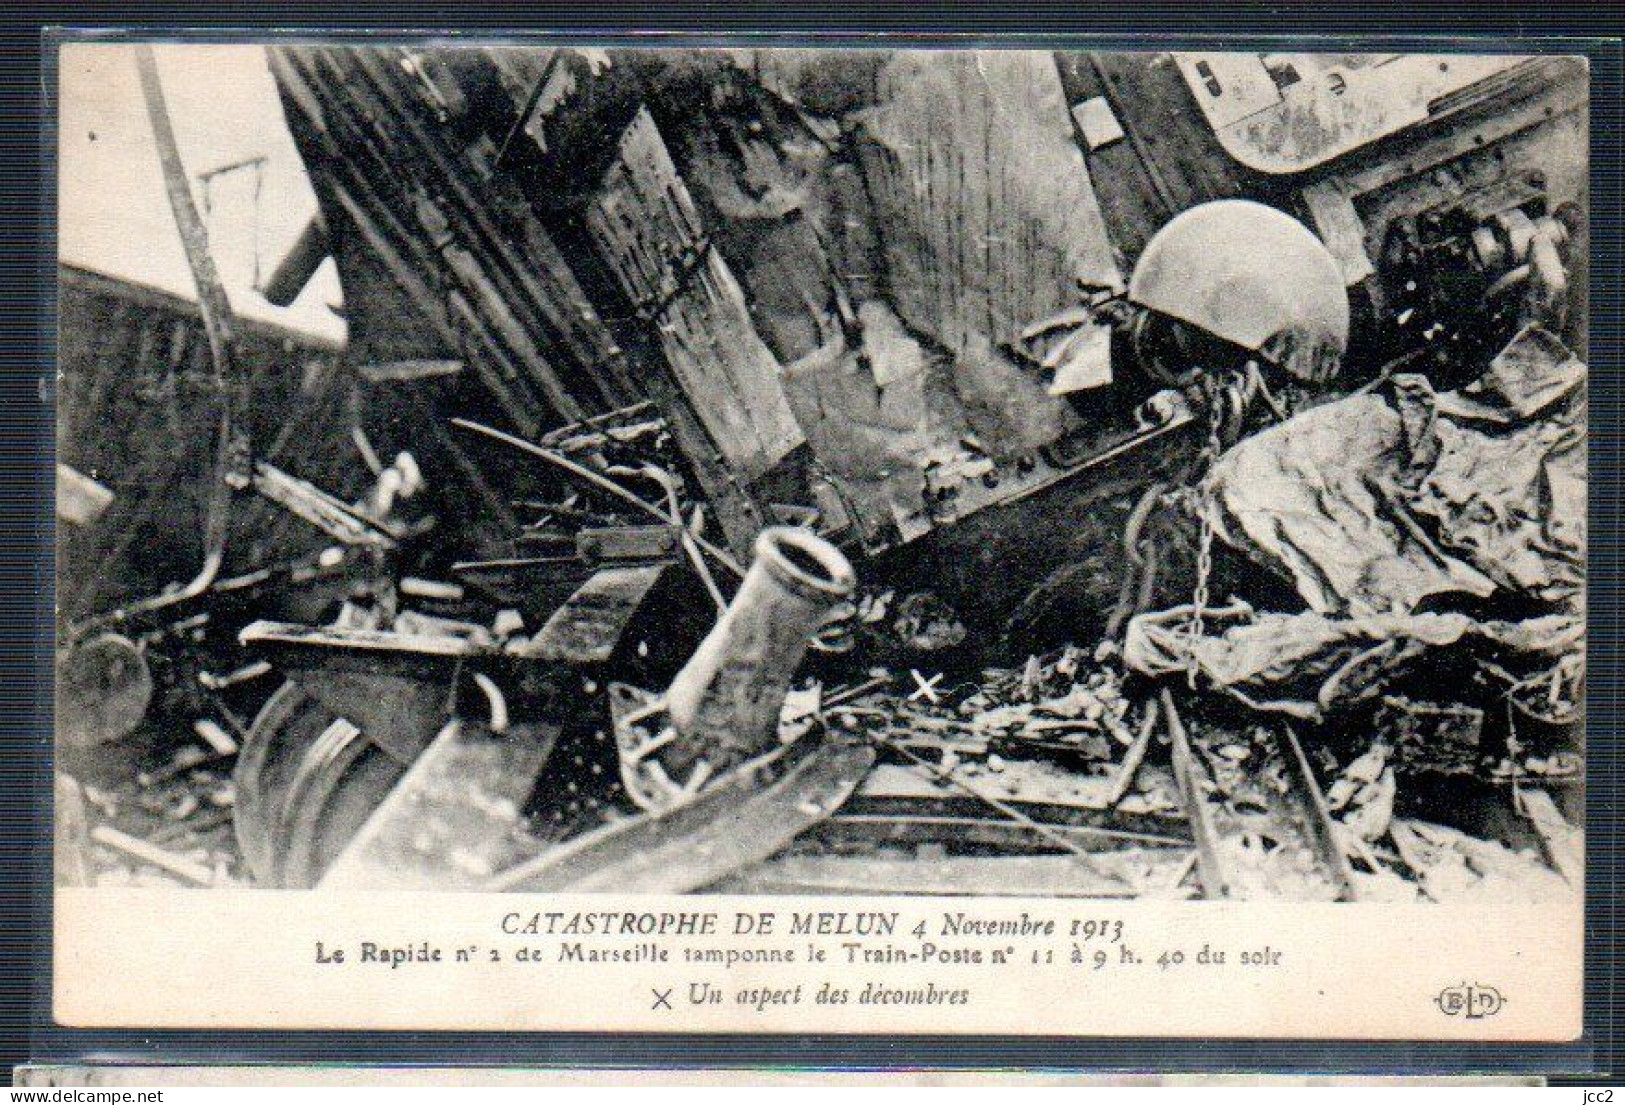 Catastrophe - De Melun 4 Novembre 1913 - Un Aspect Des Décombres - Katastrophen